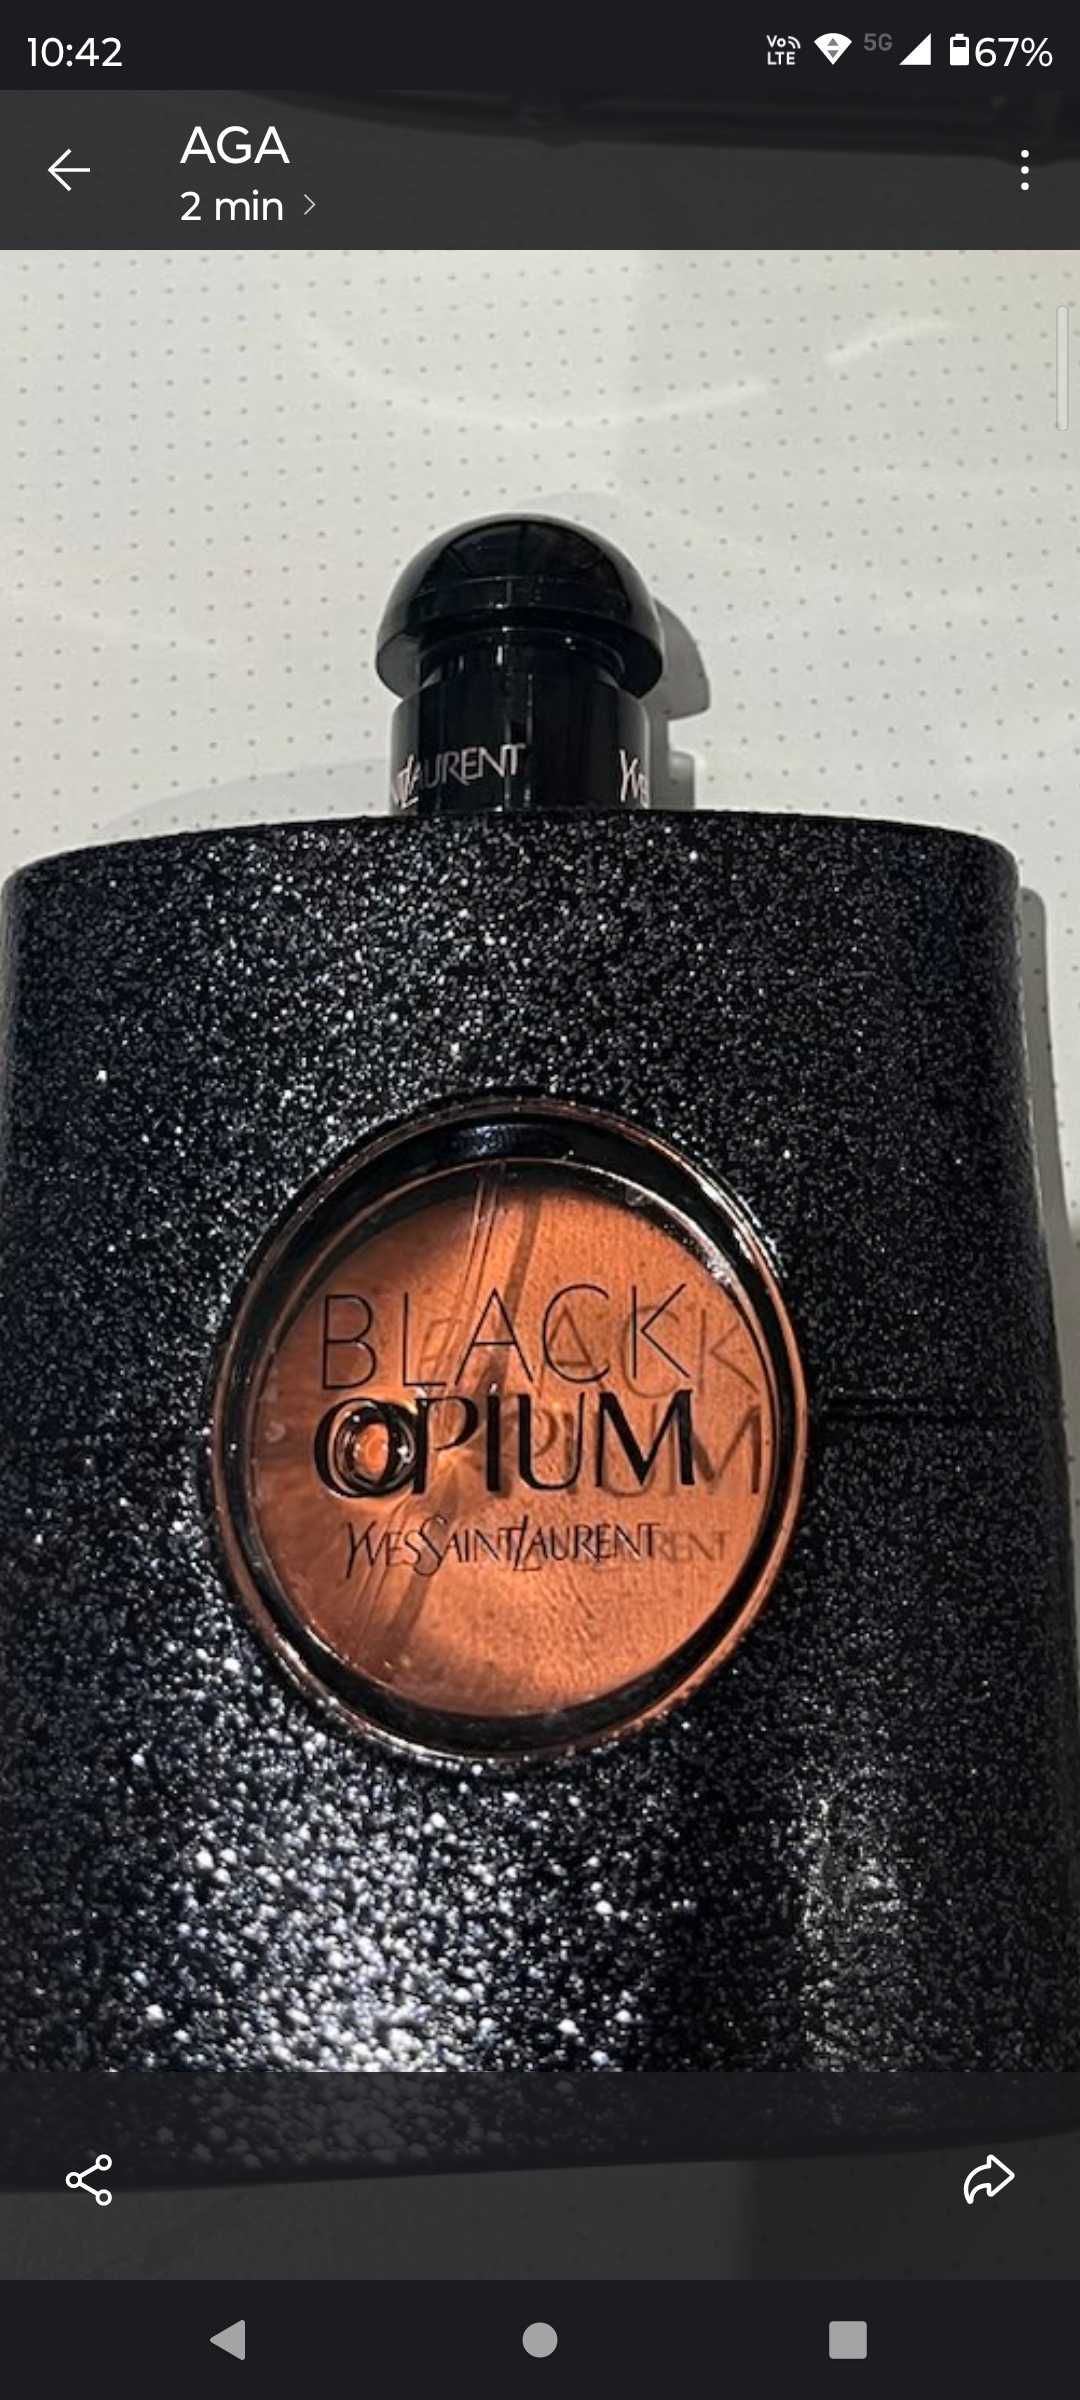 Perfum Black Opium